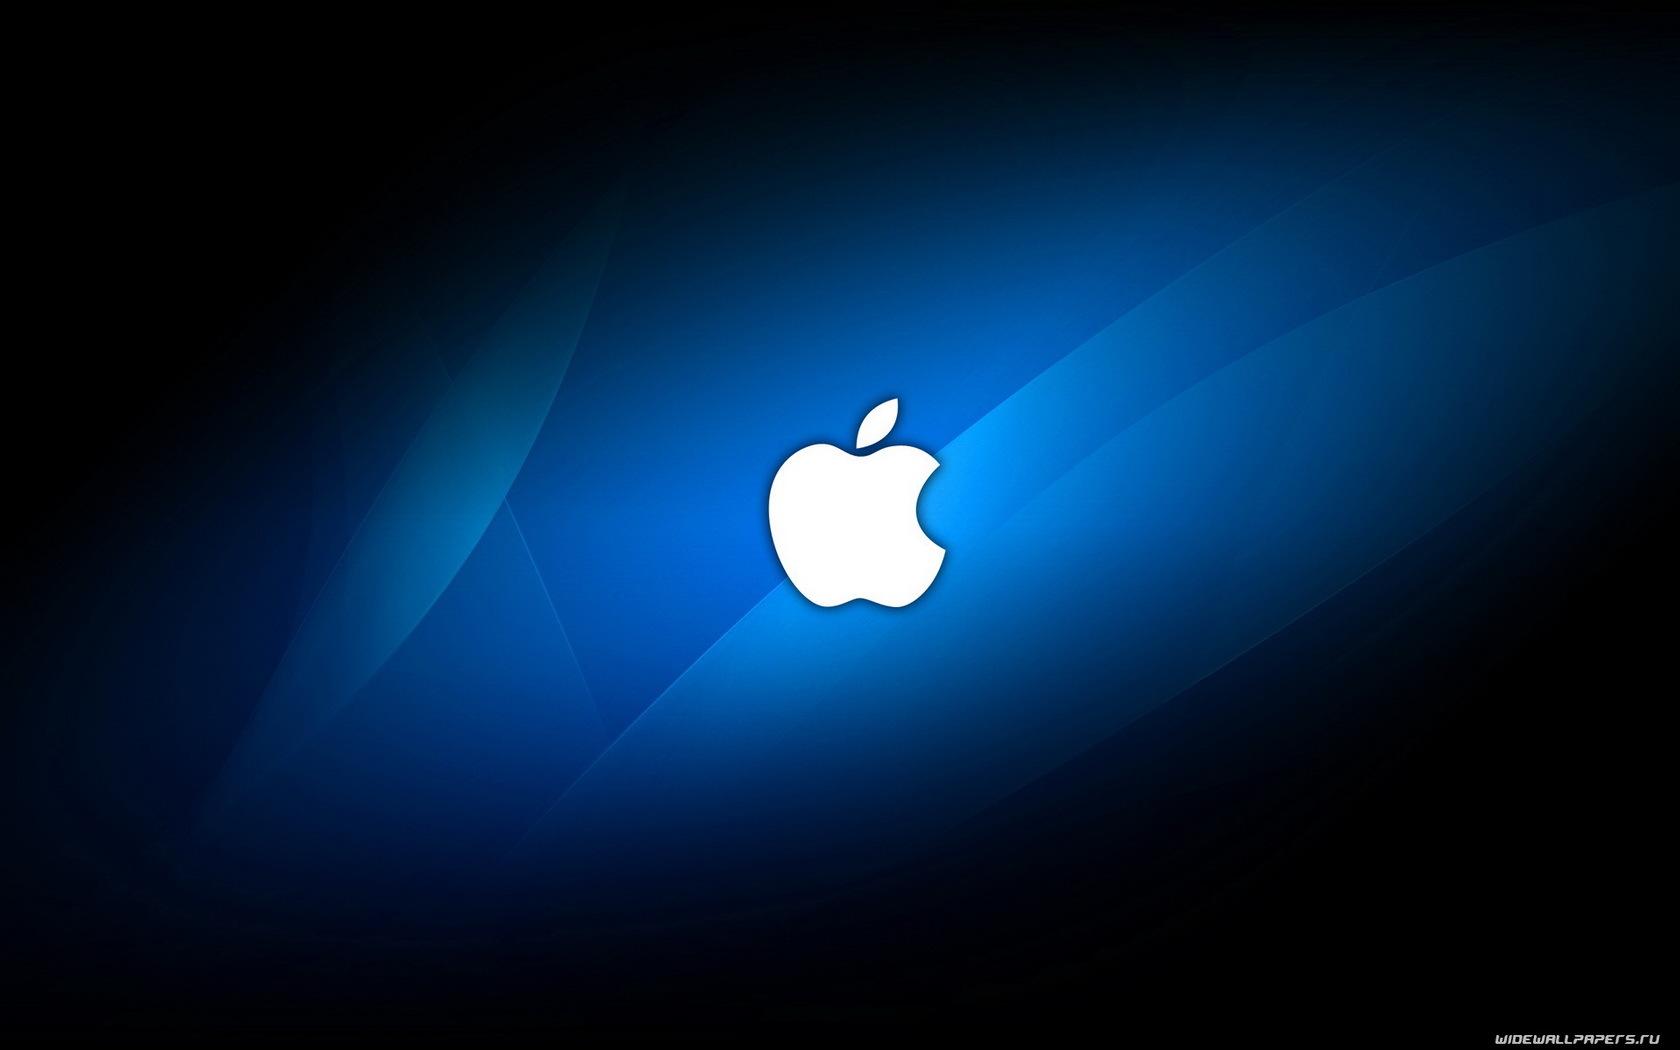 Brands apple, logos, blue HD desktop images